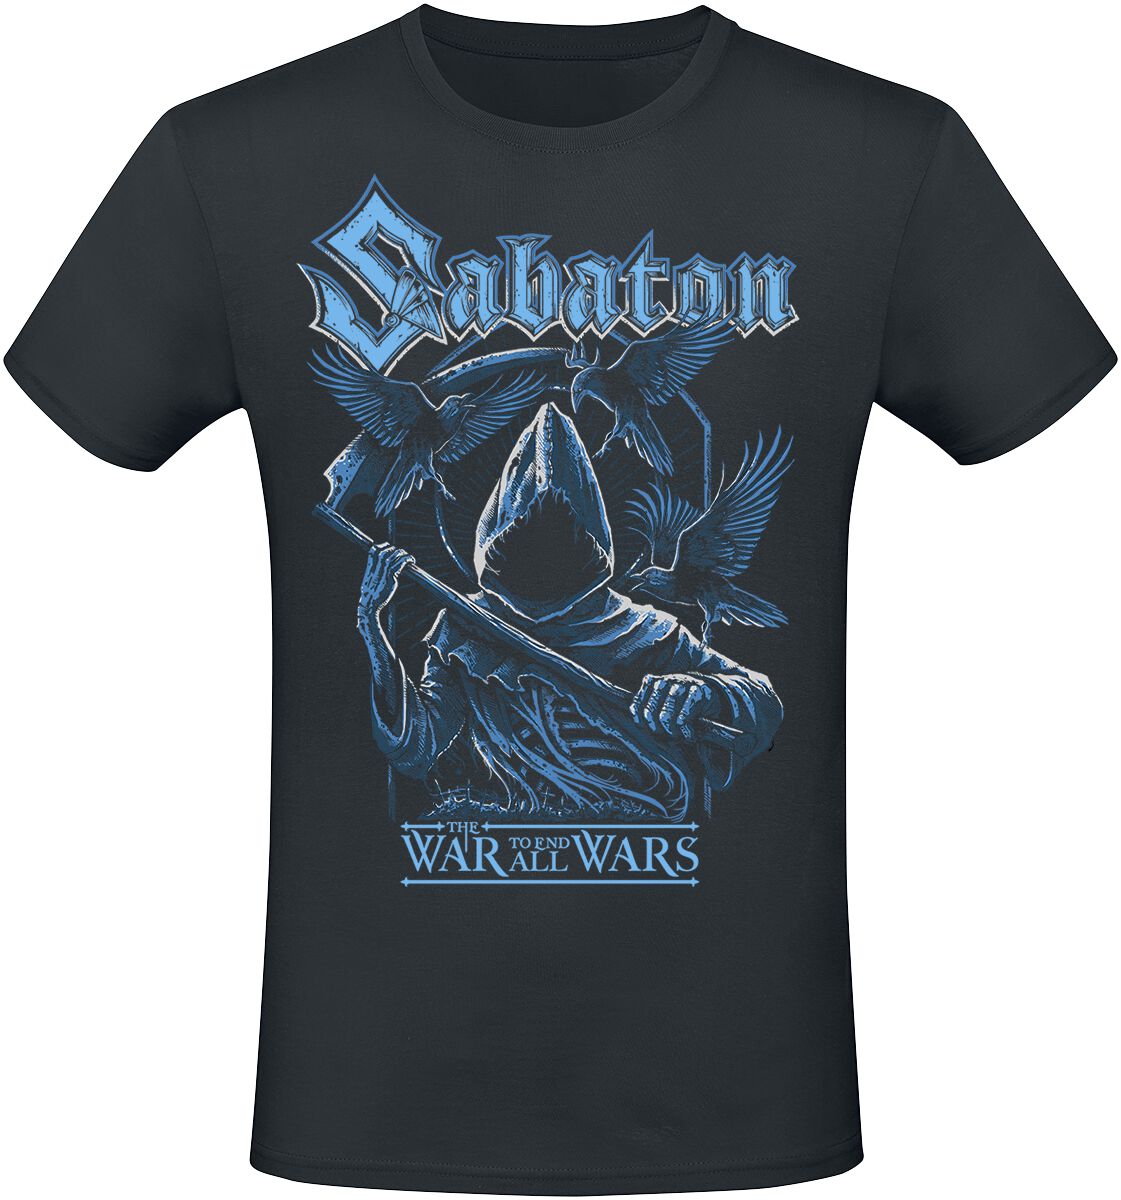 Sabaton T-Shirt - Reaper - S bis 5XL - für Männer - Größe 4XL - schwarz  - EMP exklusives Merchandise!